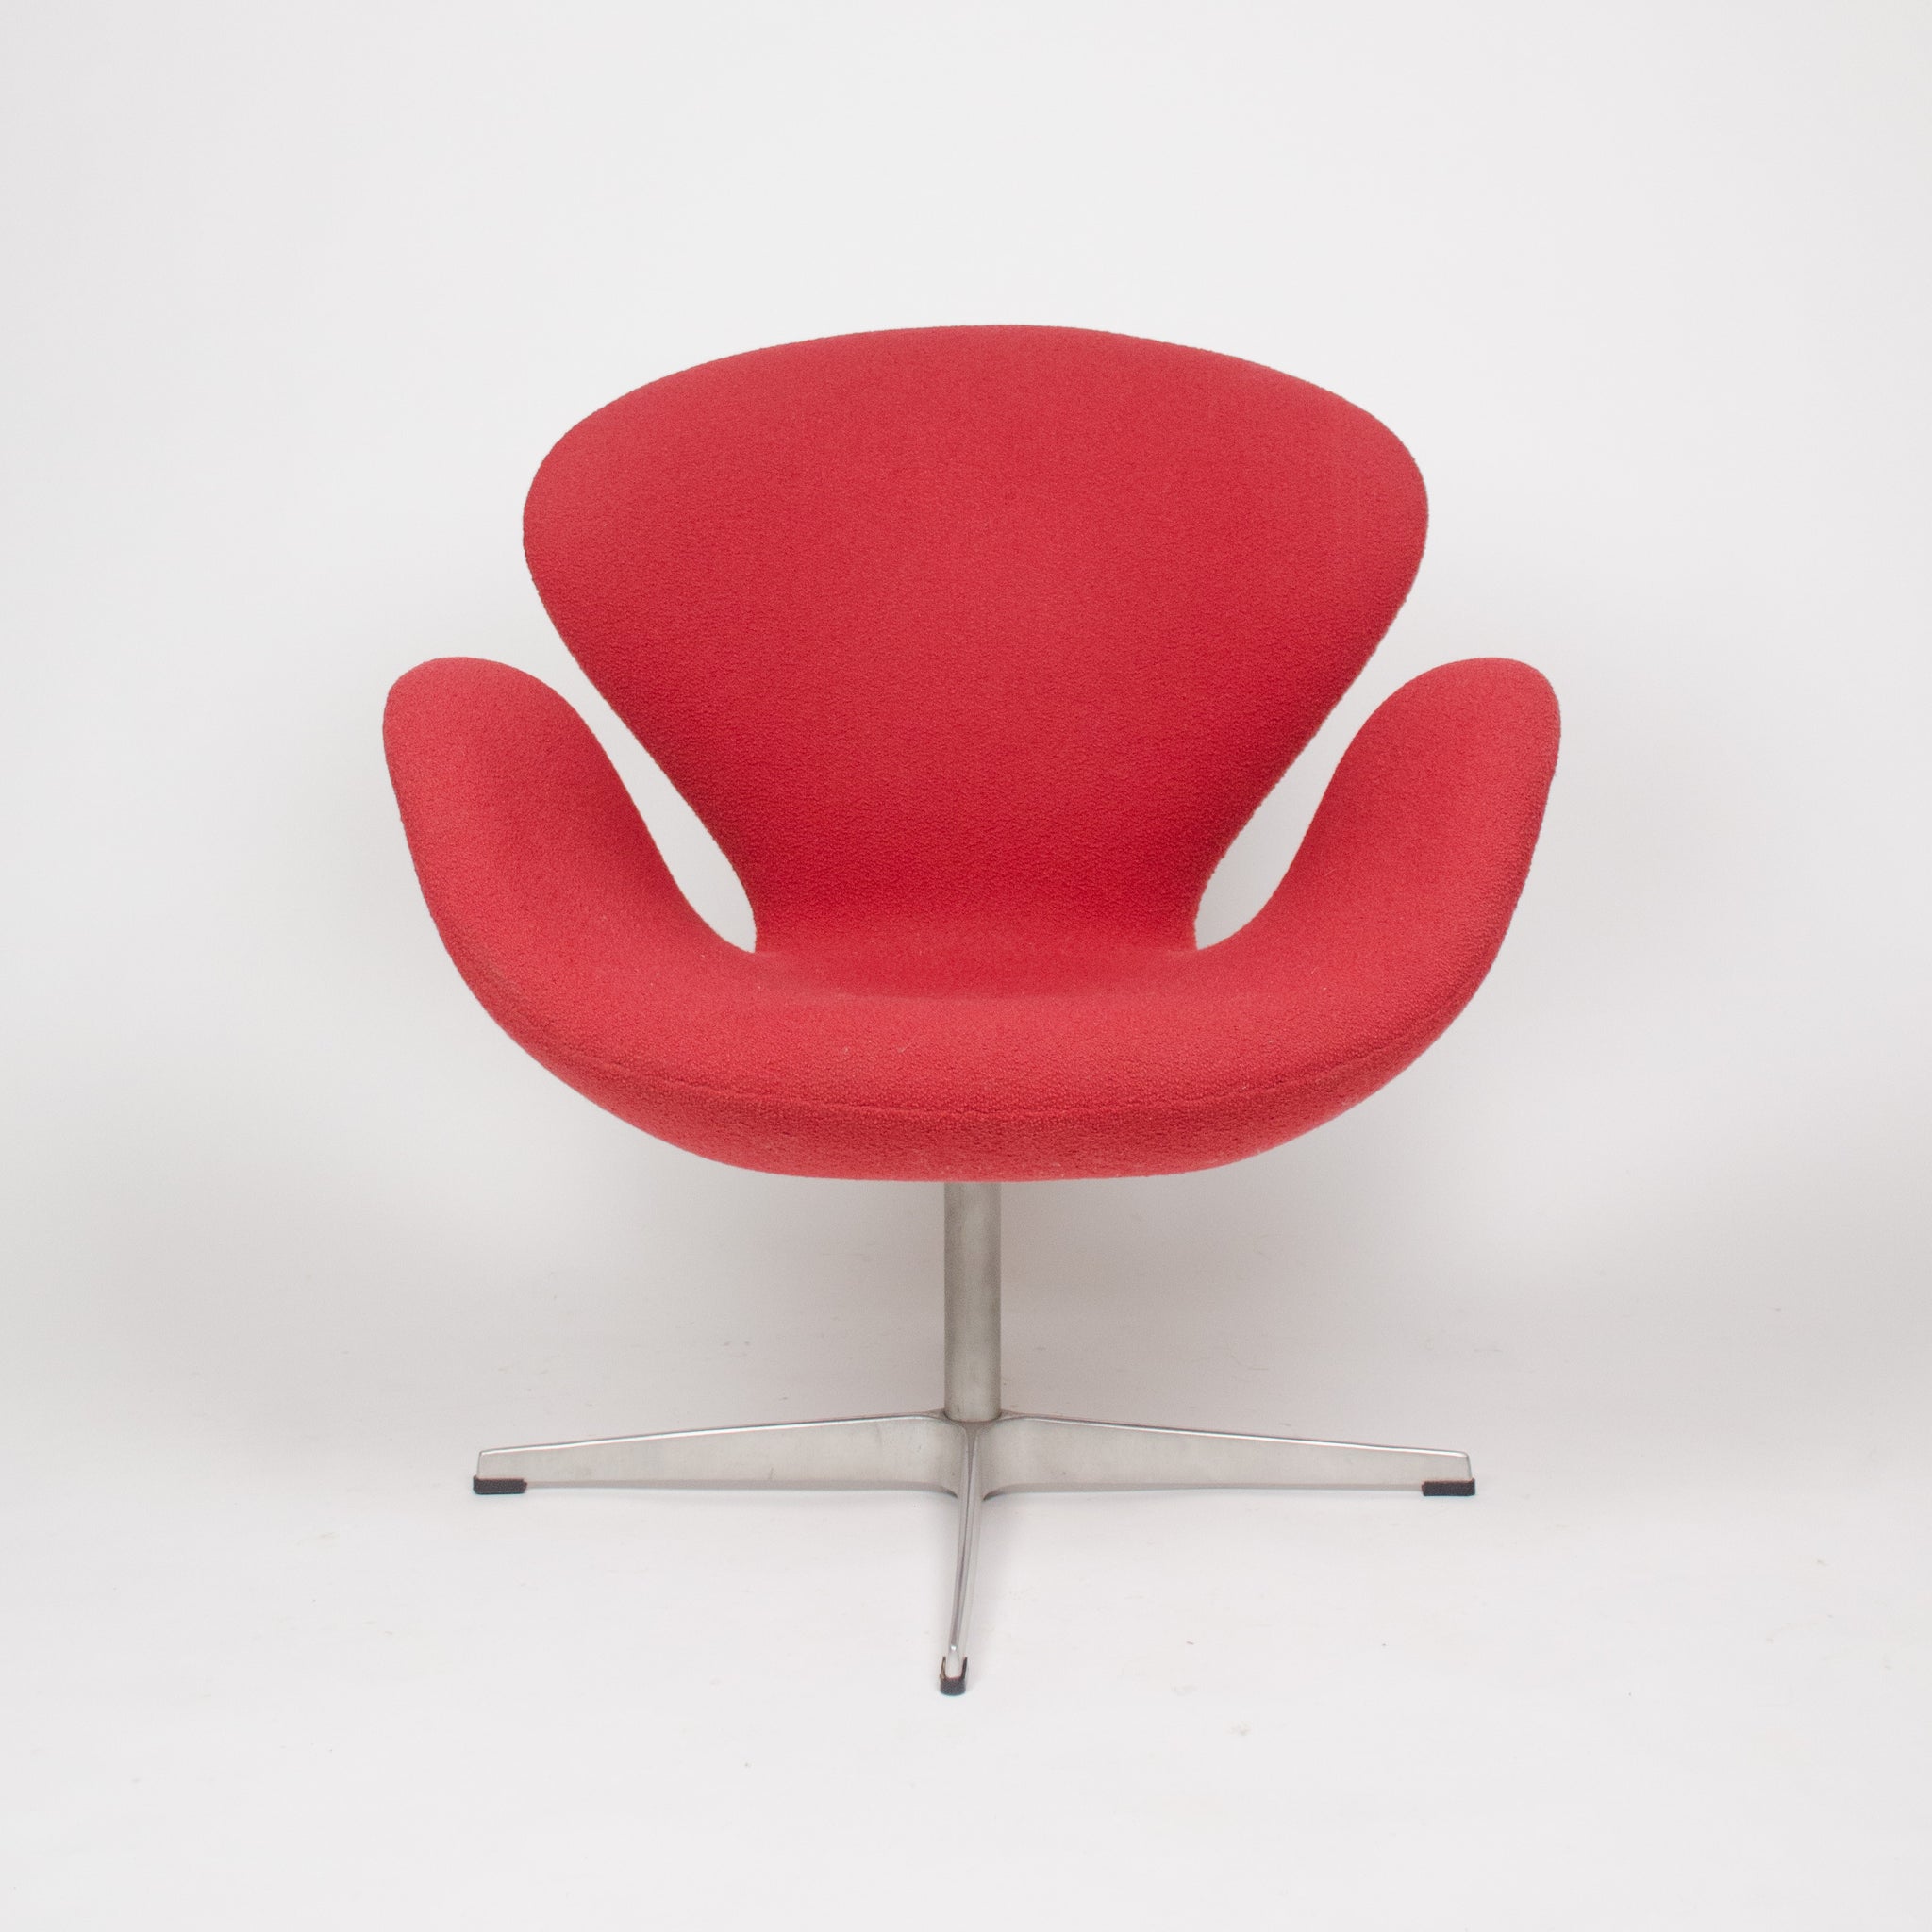 SOLD Arne Jacobsen for Fritz Hansen Denmark Swan Chairs Knoll Studio (2x)